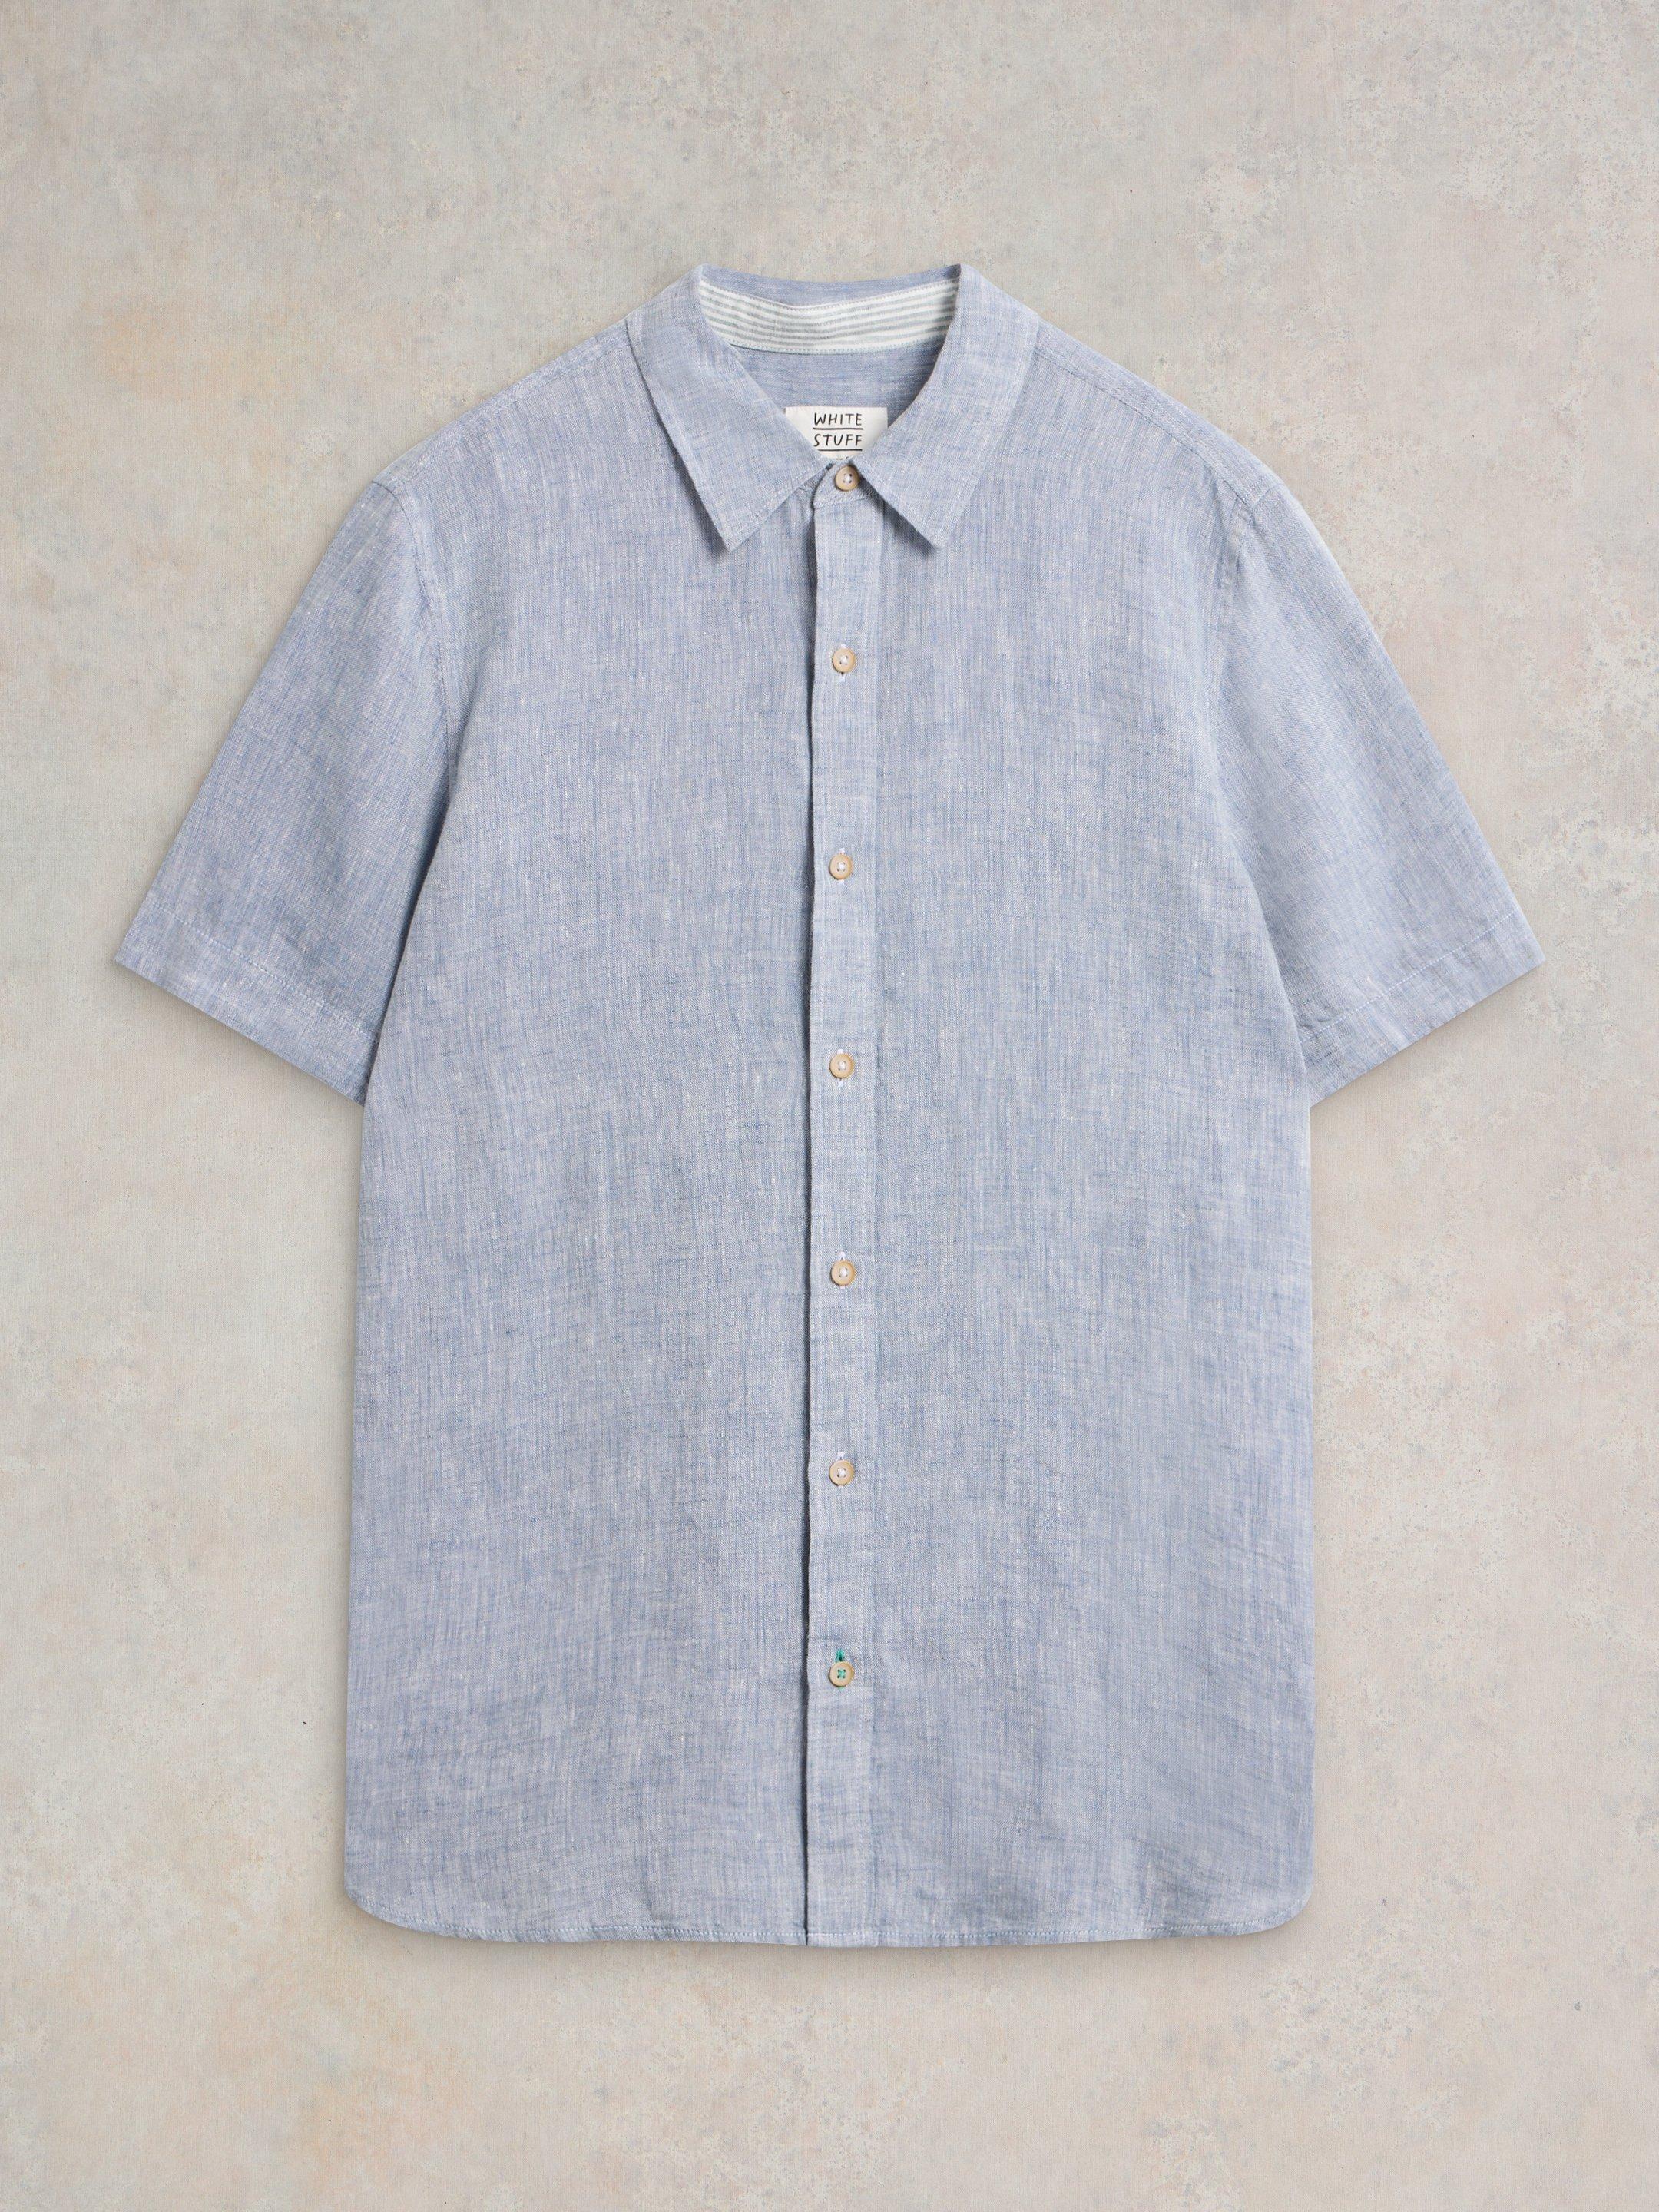 Pembroke SS Linen Shirt in CHAMB BLUE - FLAT FRONT